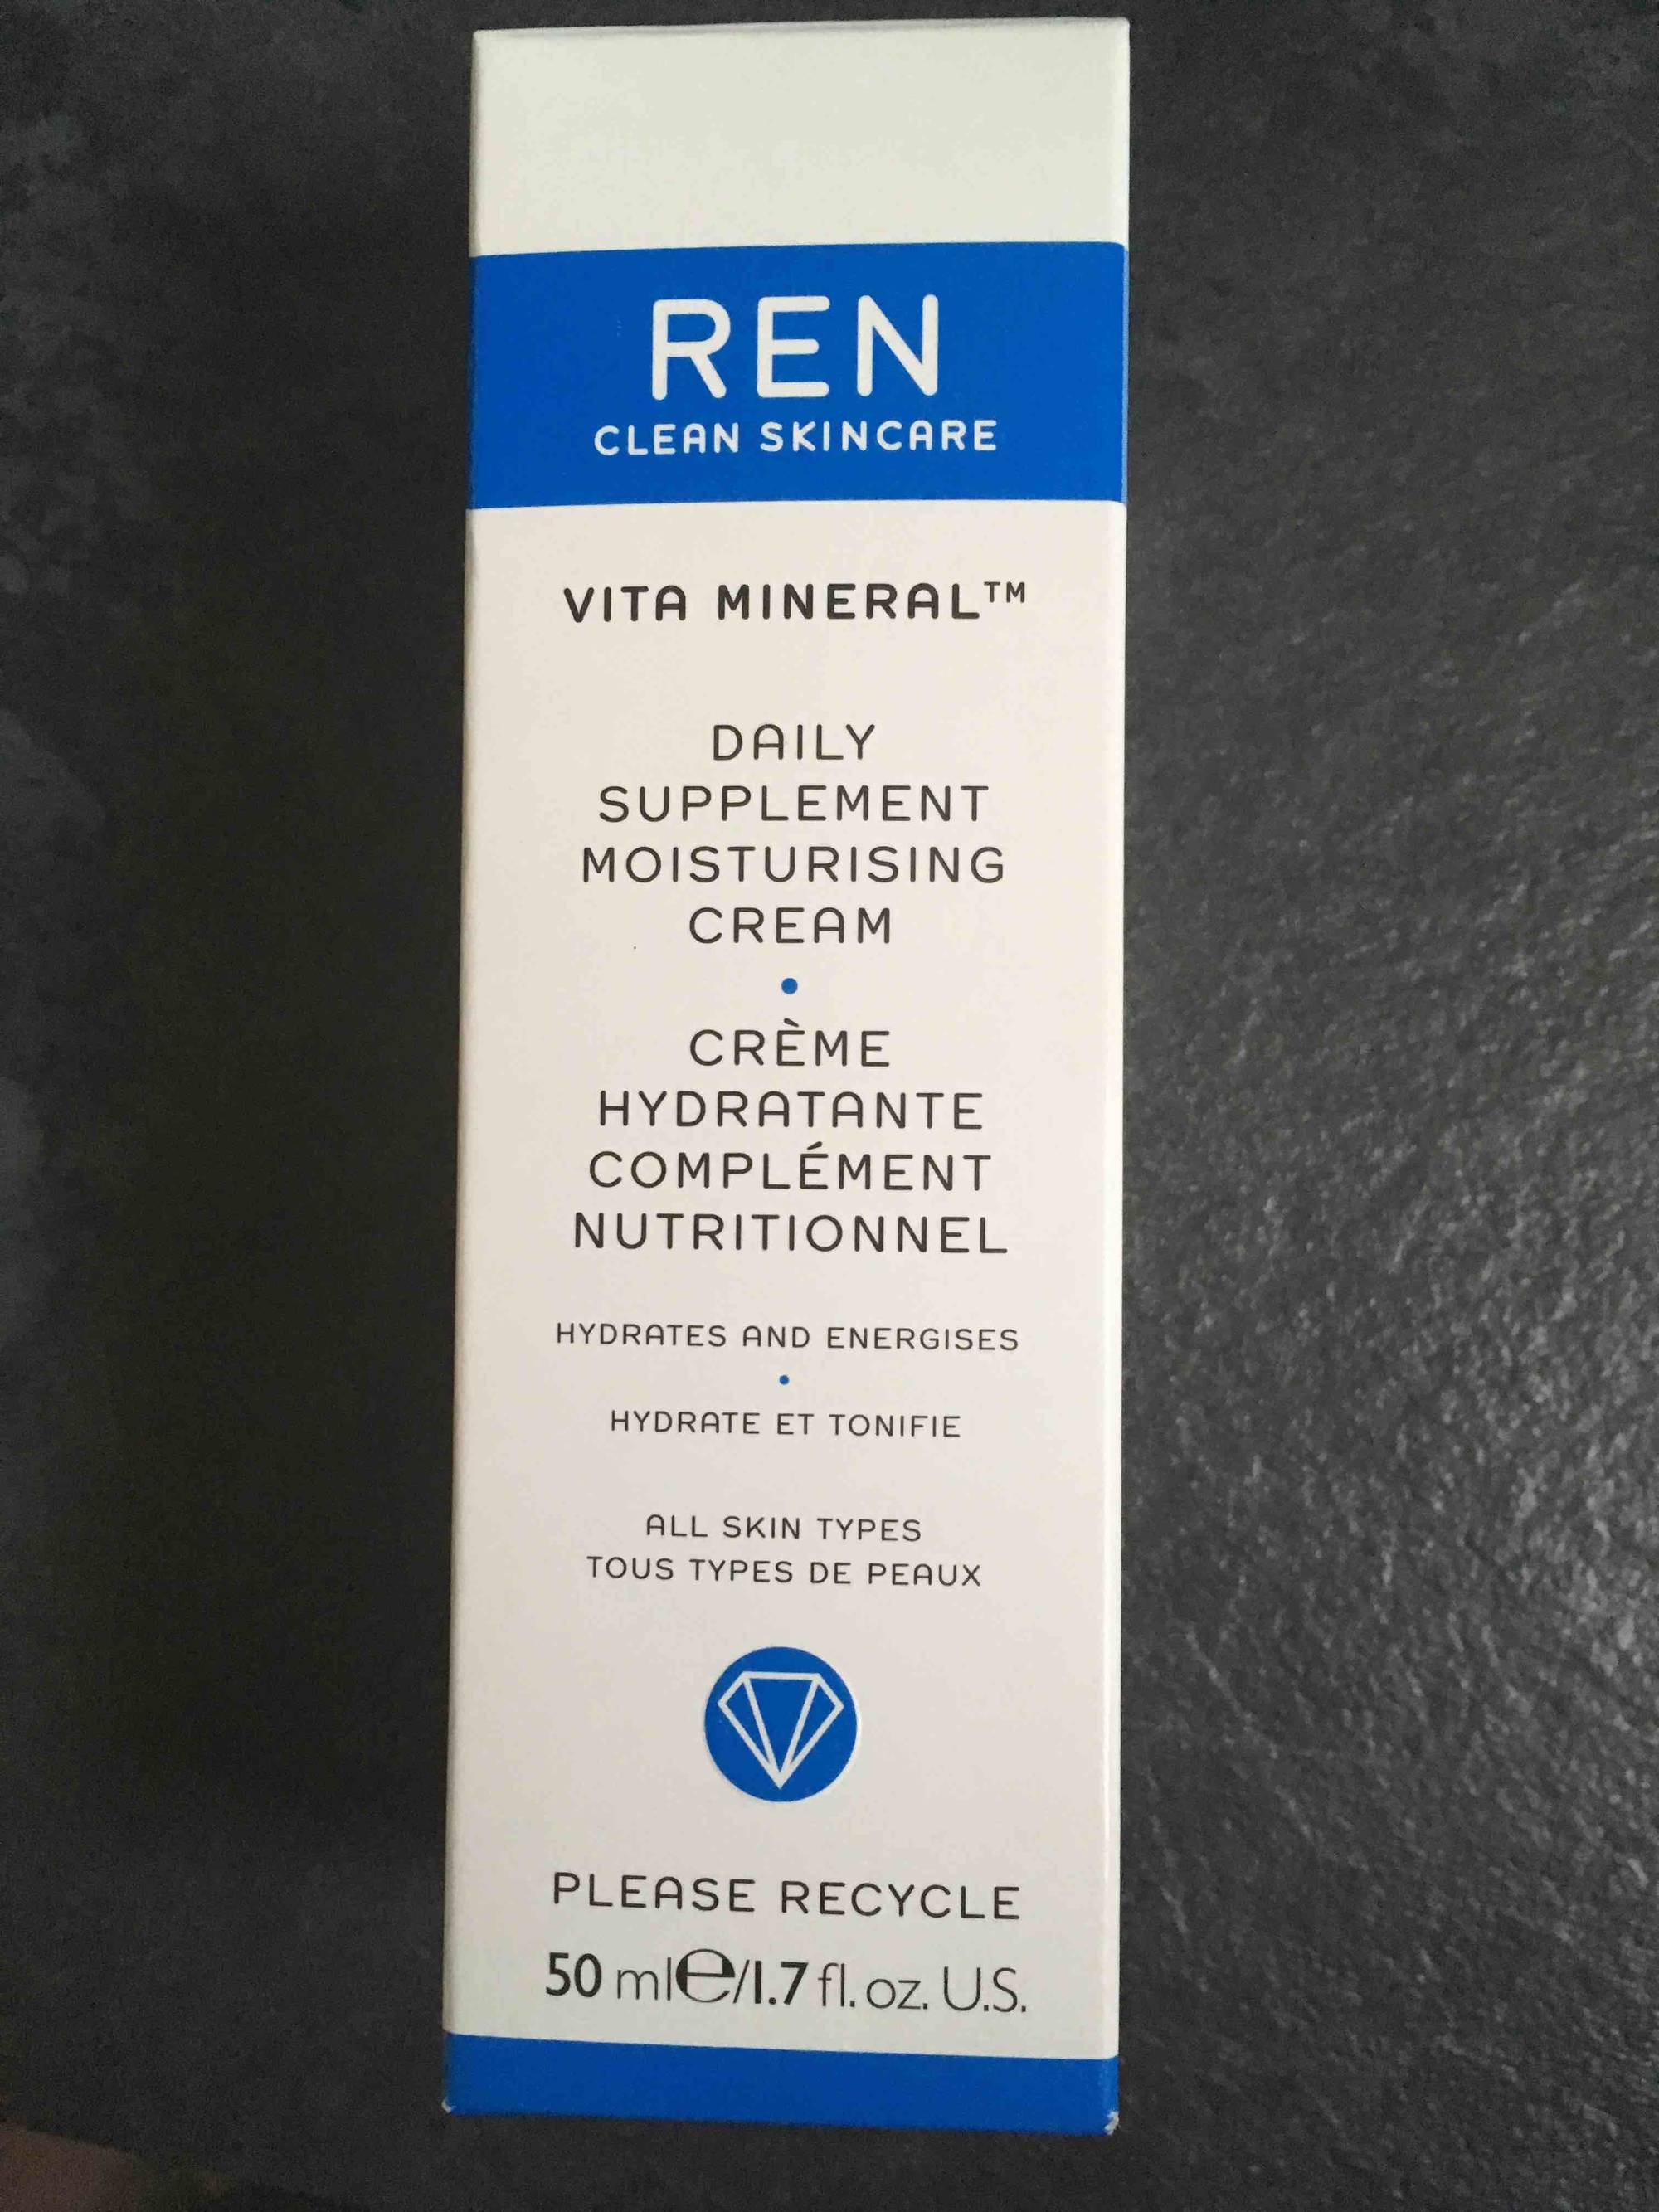 REN - Vita mineral - Crème hydratante complément nutritionnel